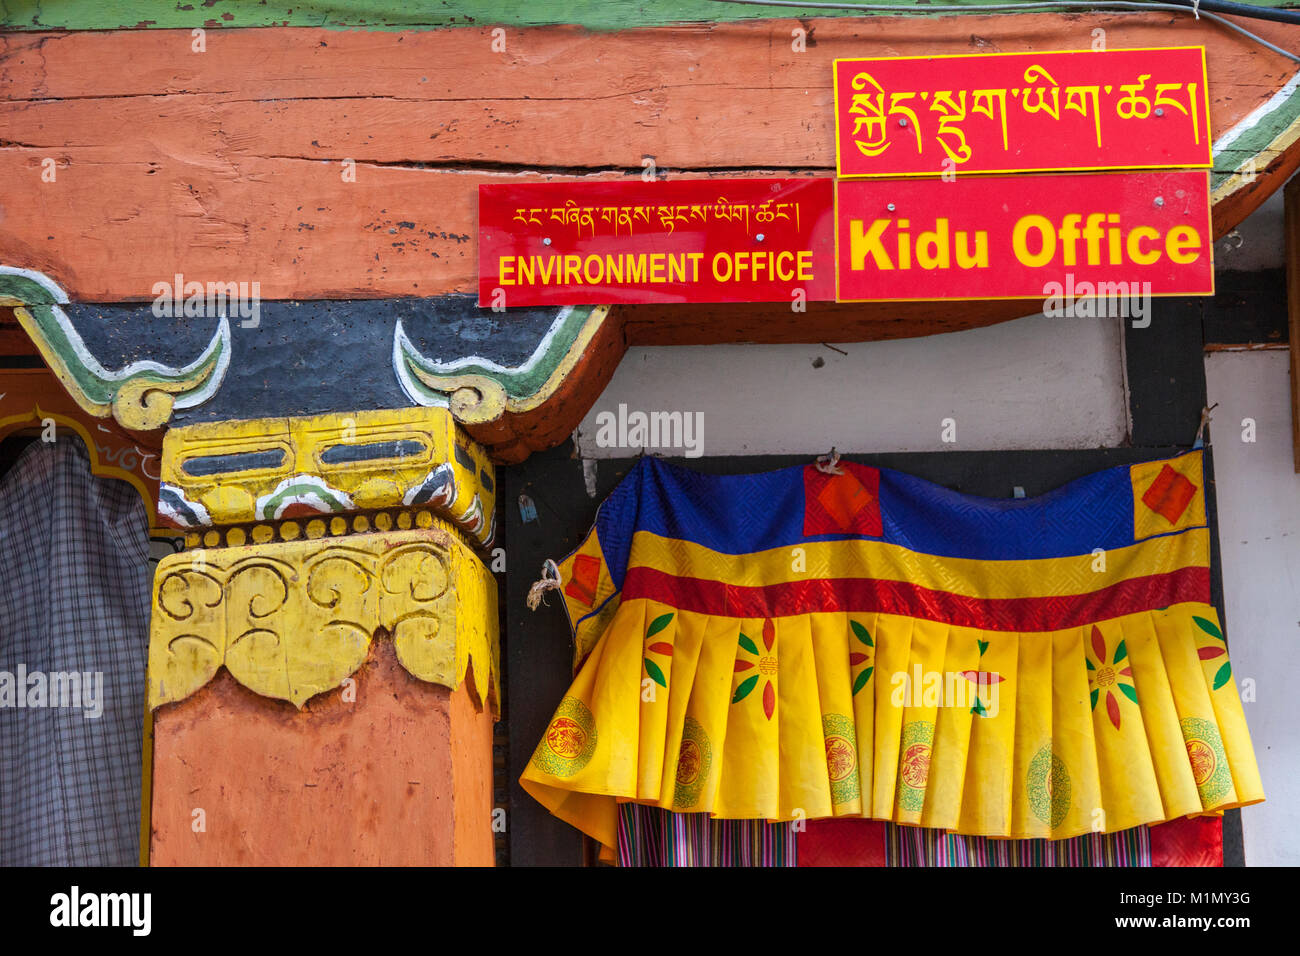 Jakar, Bumthang, Bhutan. Umwelt Büro anmelden, in Englisch und Dzongkha im tibetischen Alphabet. Innenraum der Jakar Dzong. Stockfoto